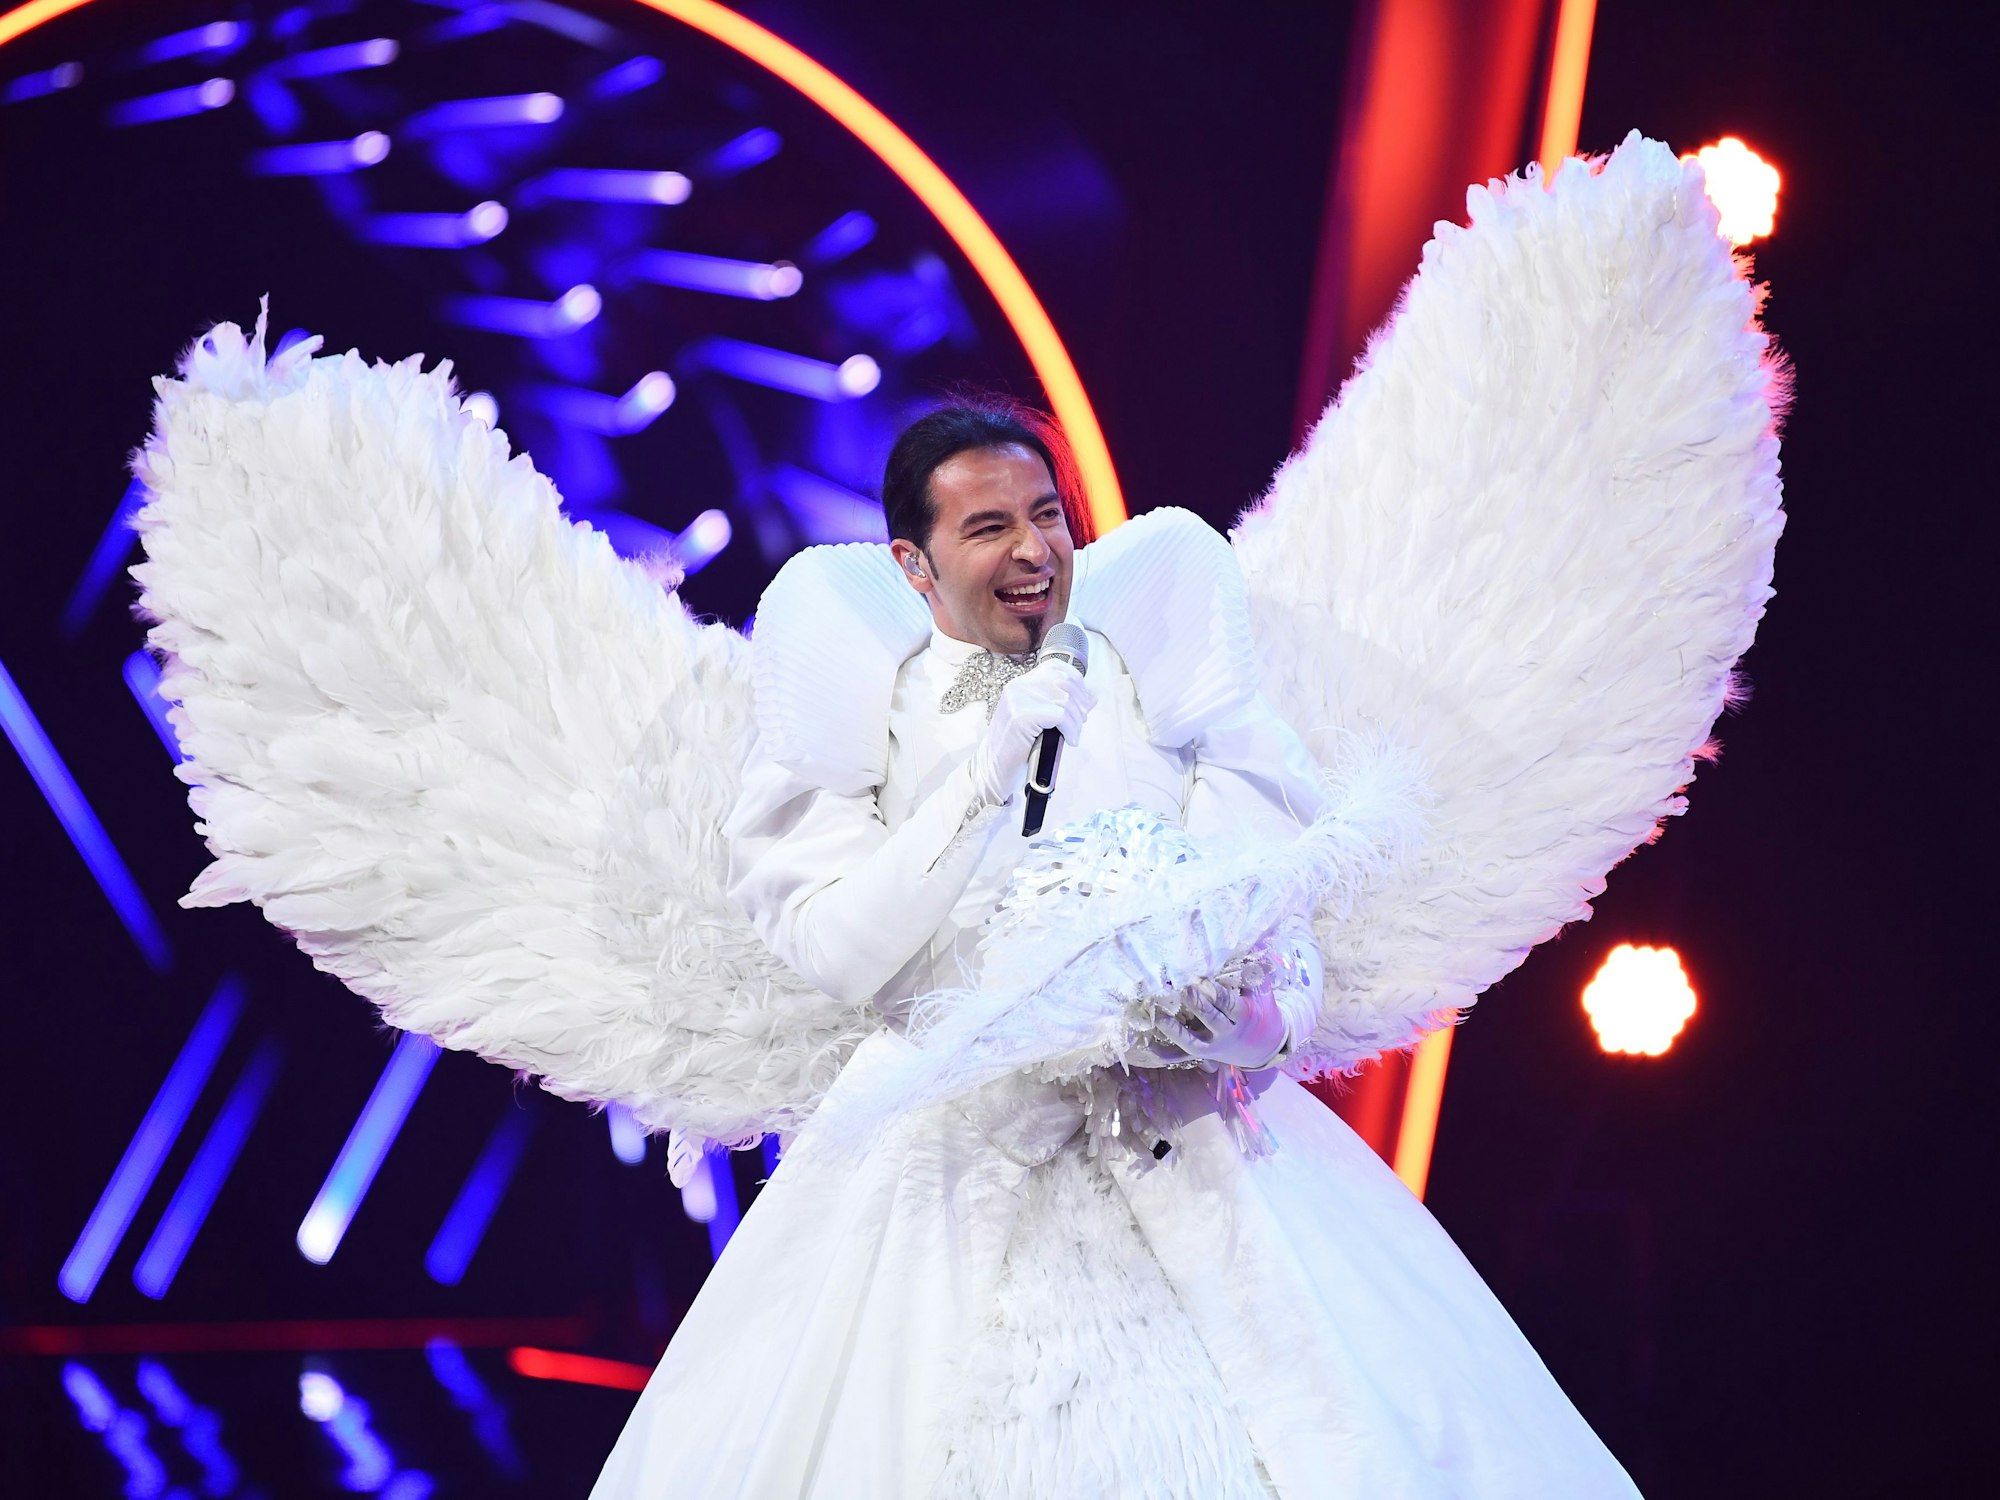 Bülent Ceylan als "Engel" bei "The Masked Singer" 2019